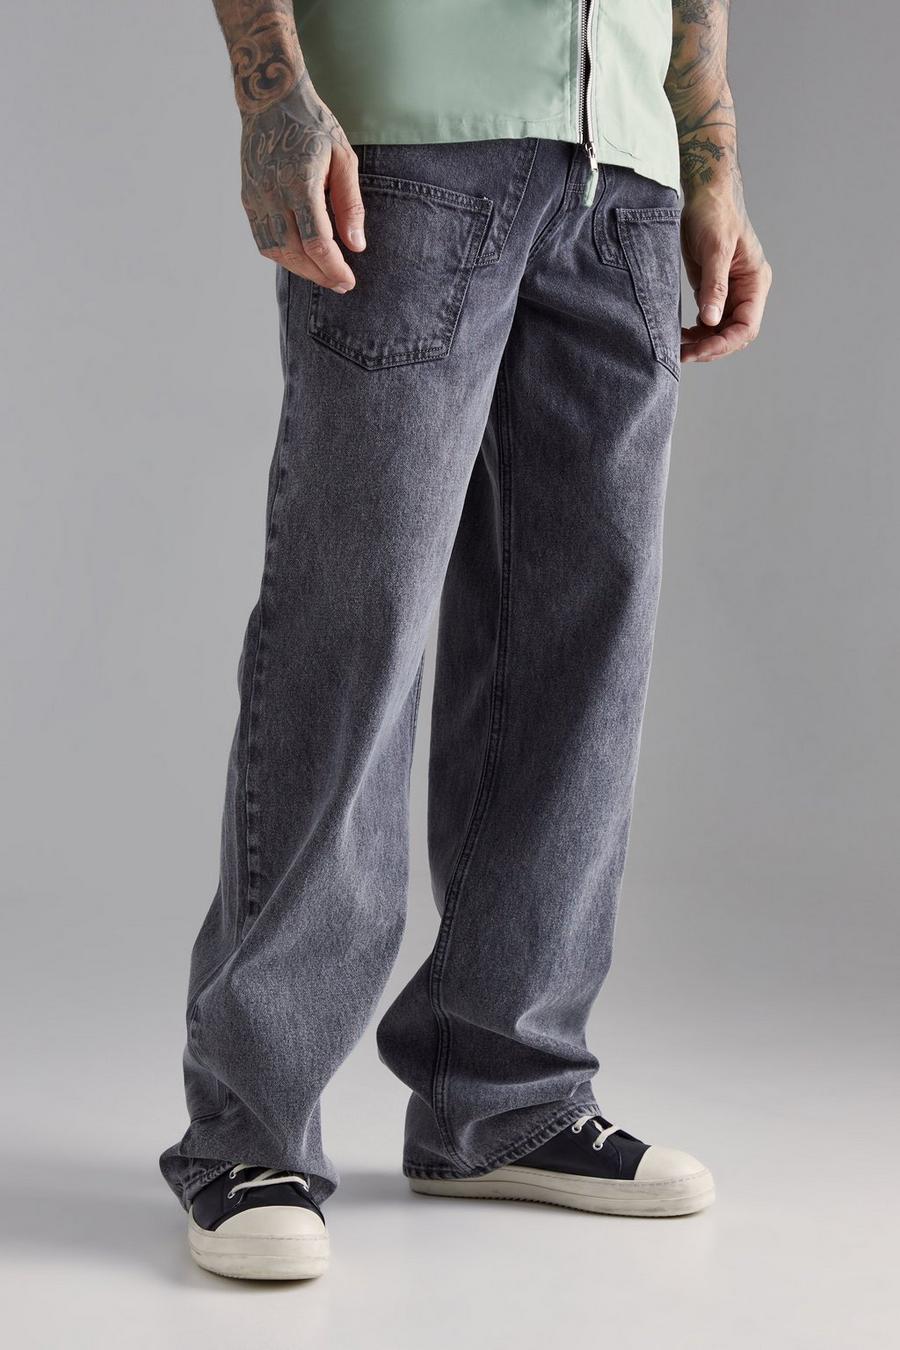 Jeans Tall extra comodi in lavaggio acido con striscia rigida, Charcoal